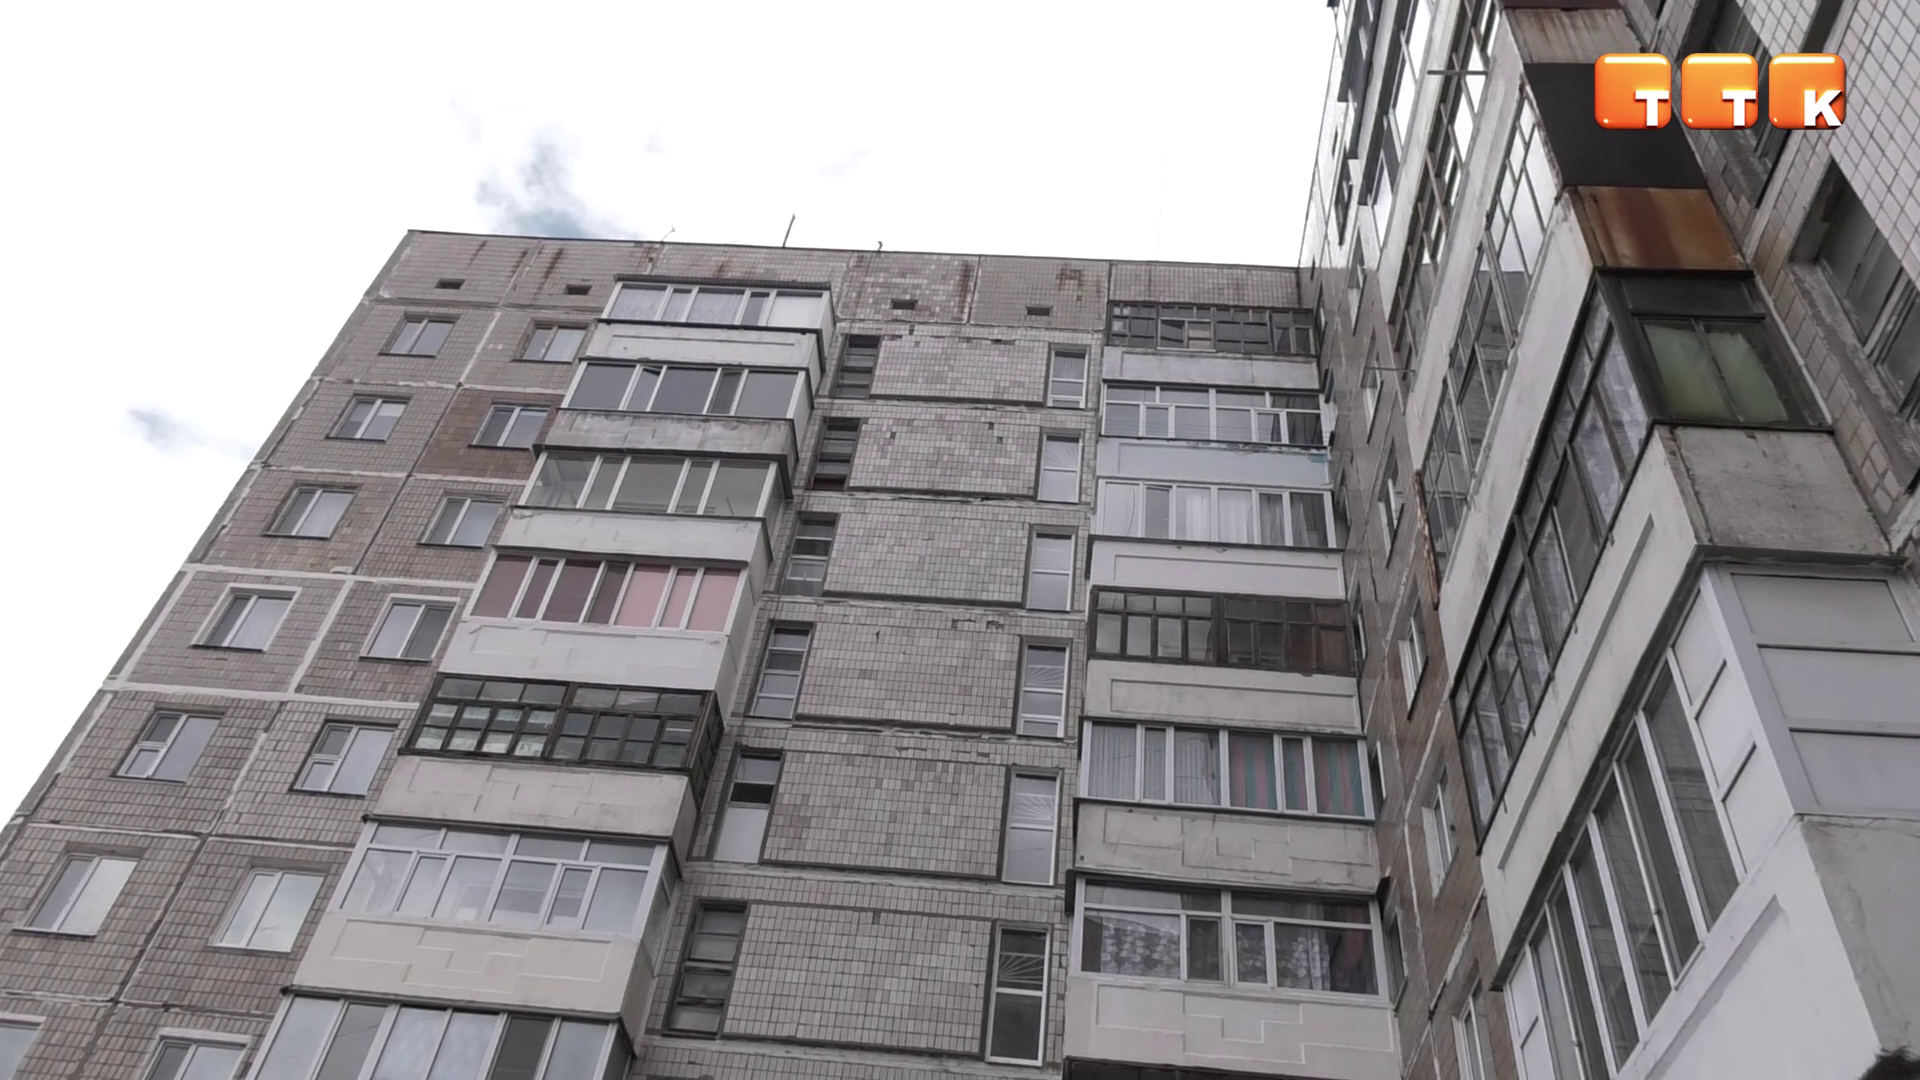 Несмотря на карантин, в Темиртау продолжают устанавливать лифты